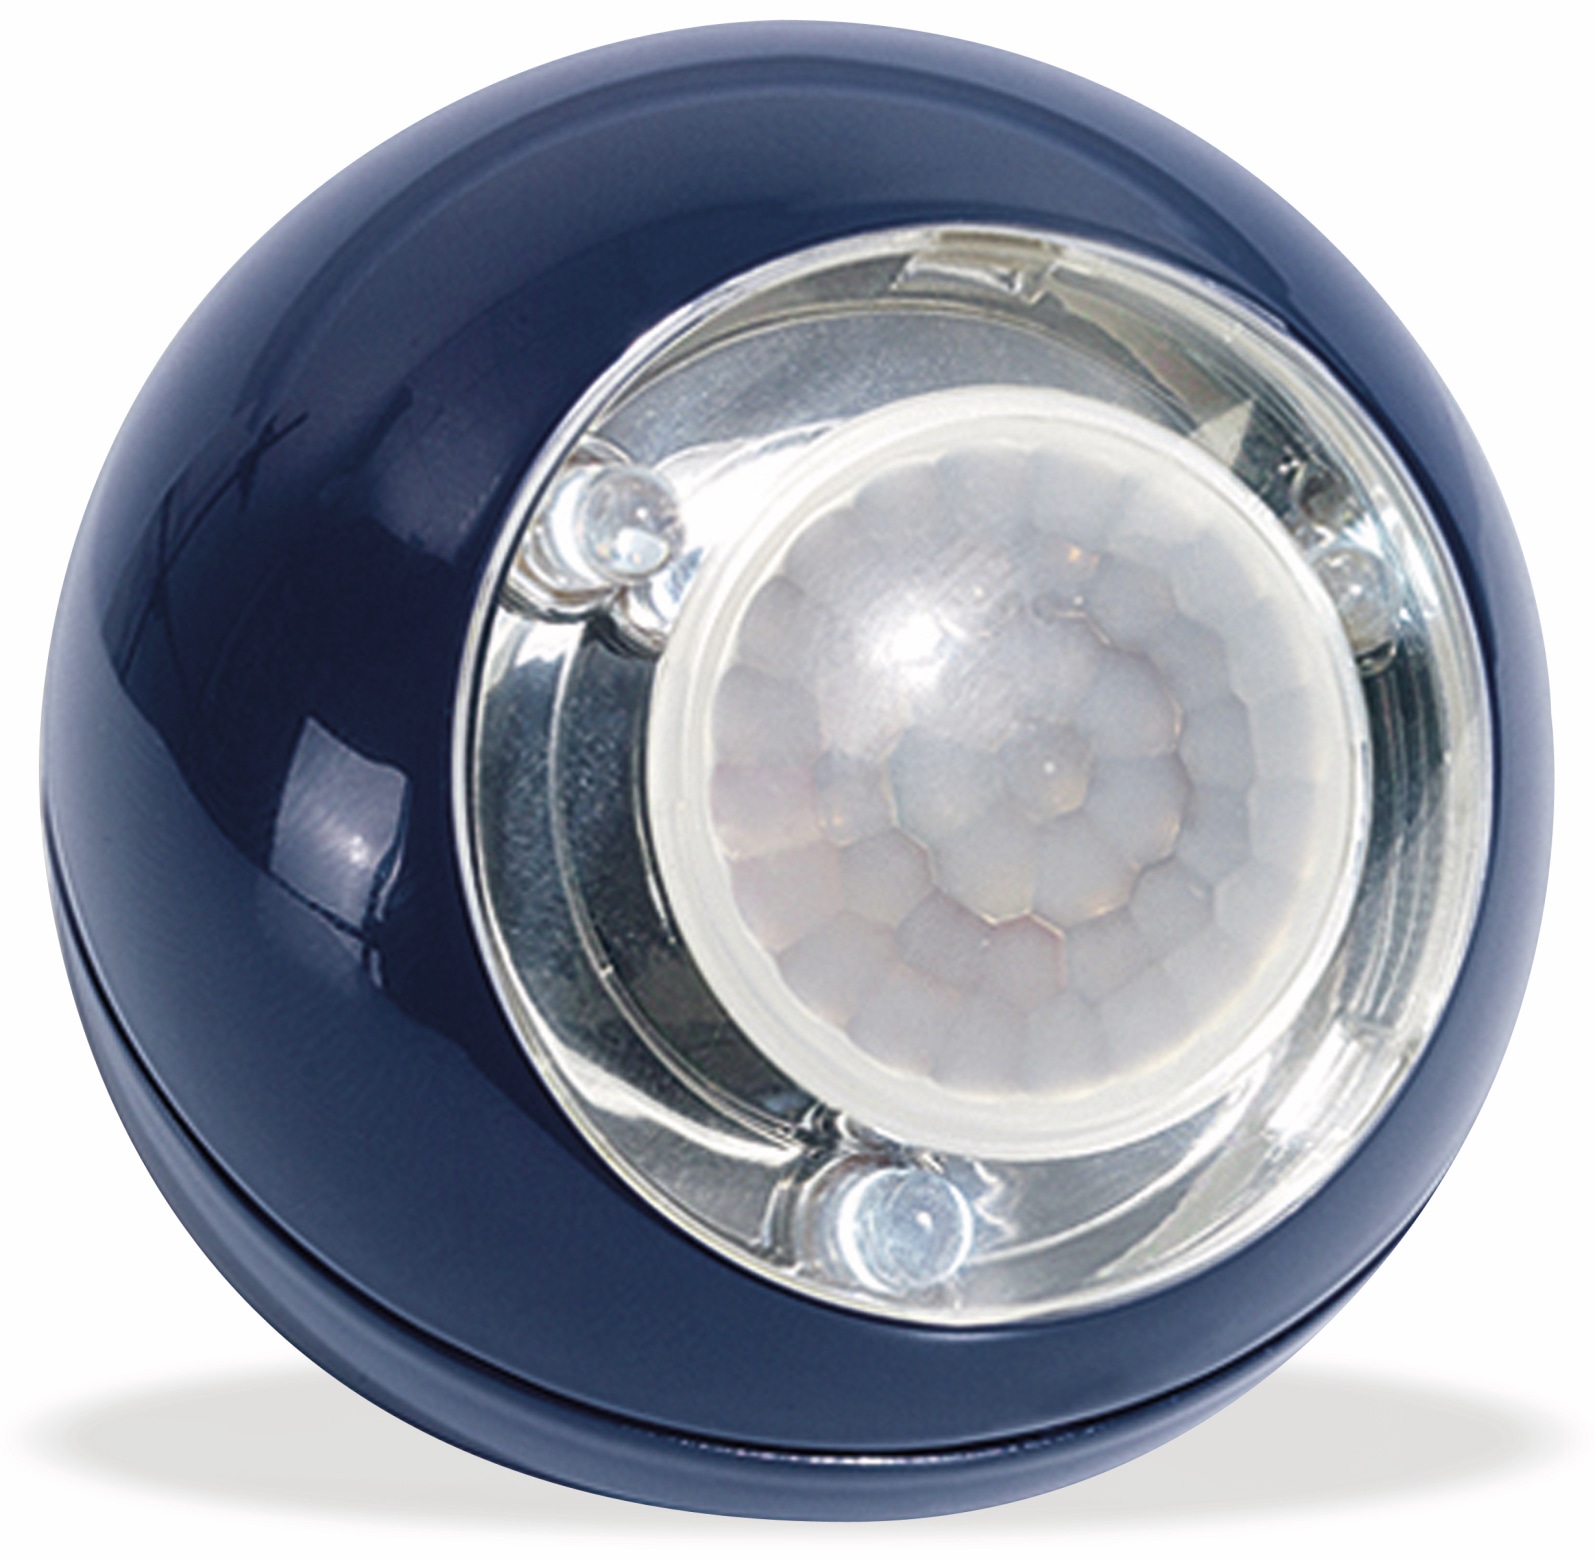 GEV LED Lichtball LLL 735 mit Bewegungsmelder, batteriebetrieb, blau